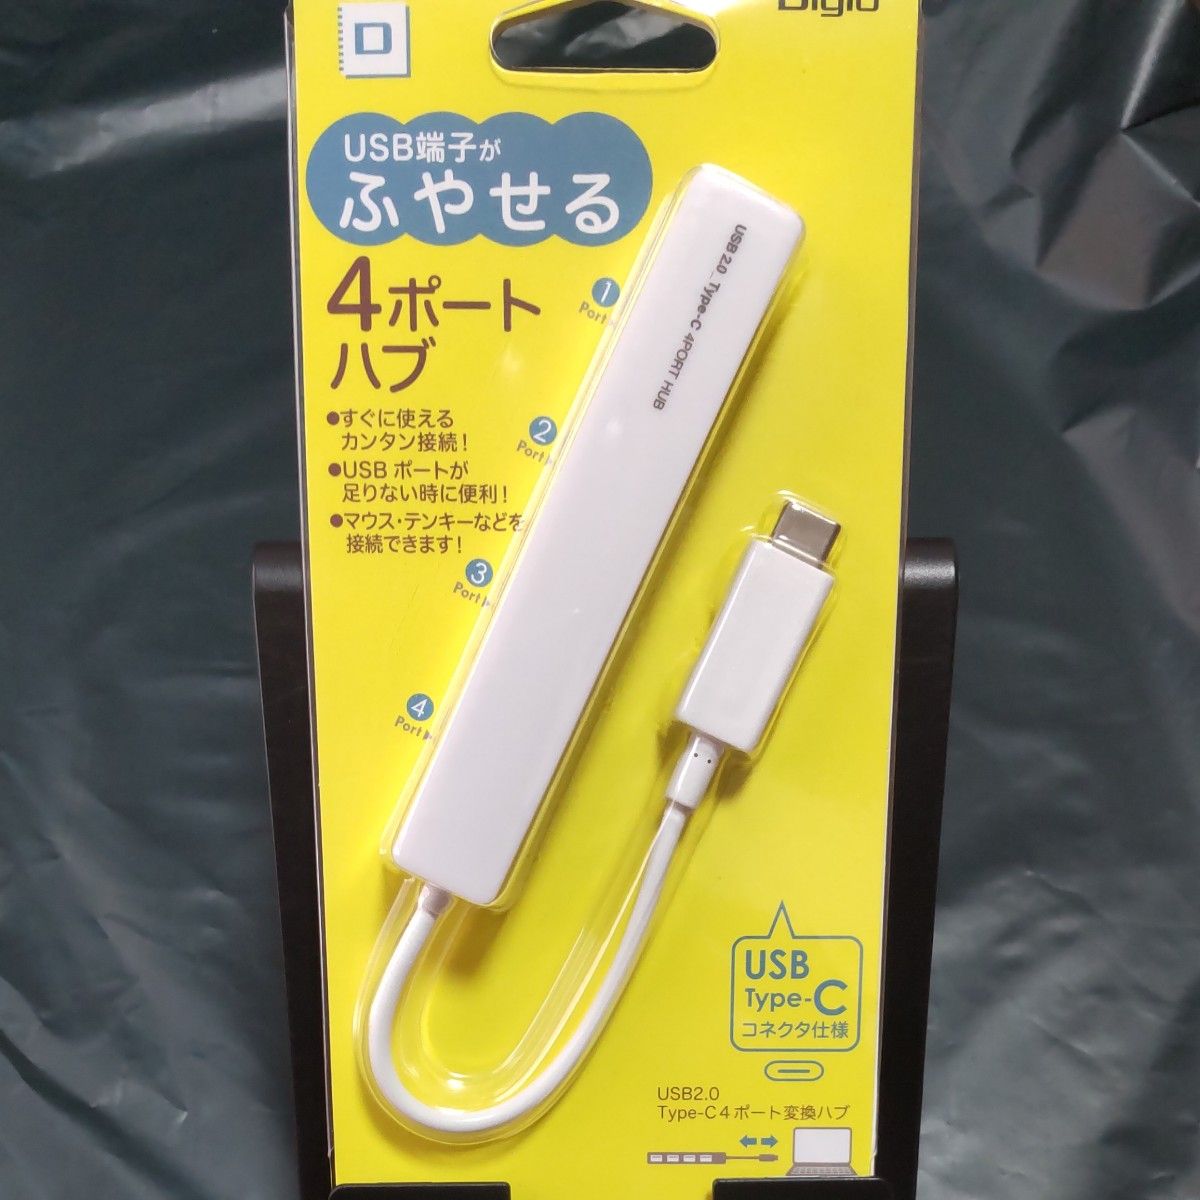 はこぽす対応商品】 ナカバヤシ Digio2 USB2.0 4ポートハブ スーパースリム ホワイト UH-2354W